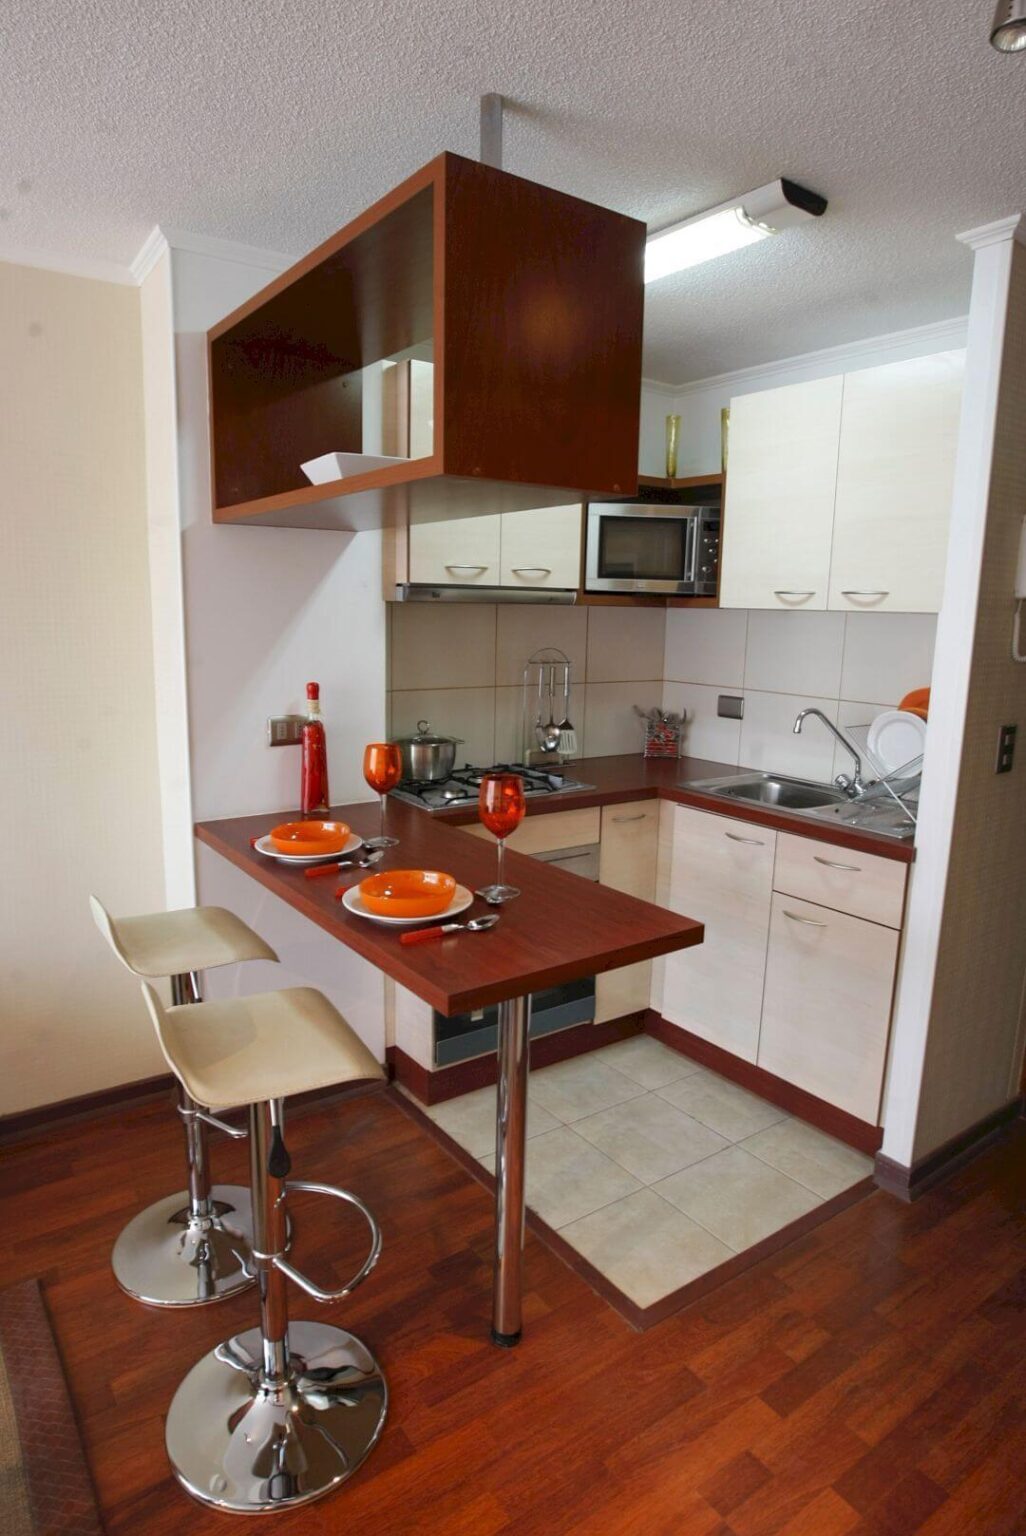 04 Small Kitchen Decor Design Ideas Homebnc 1026x1536 